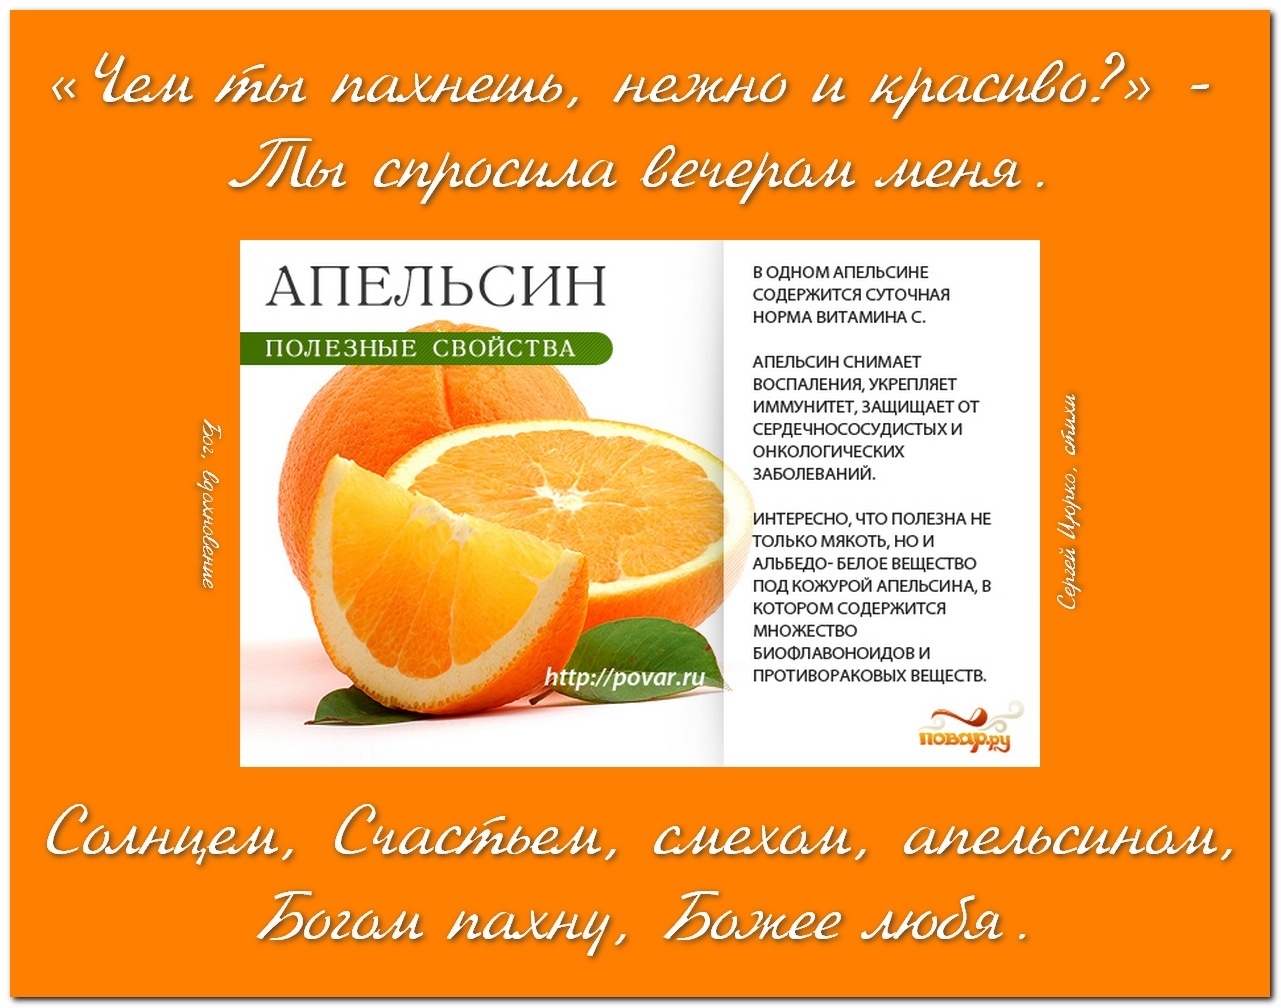 Апельсины для похудения, стоит ли есть, каллорийность | irksportmol.ru